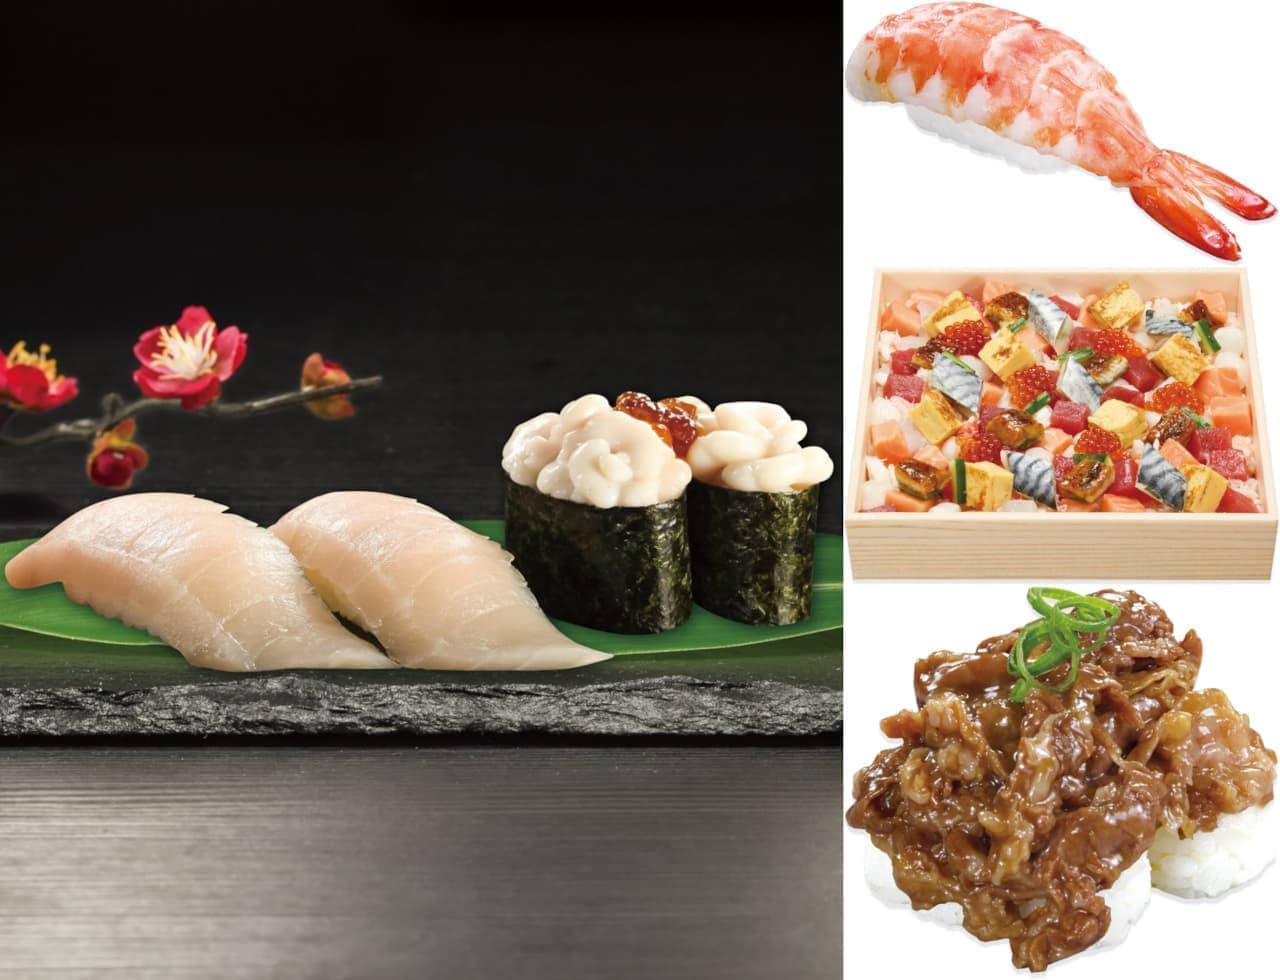 くら寿司 “とろづくし” フェア “500店舗達成記念” フェア ひなまつりメニュー 肉寿司